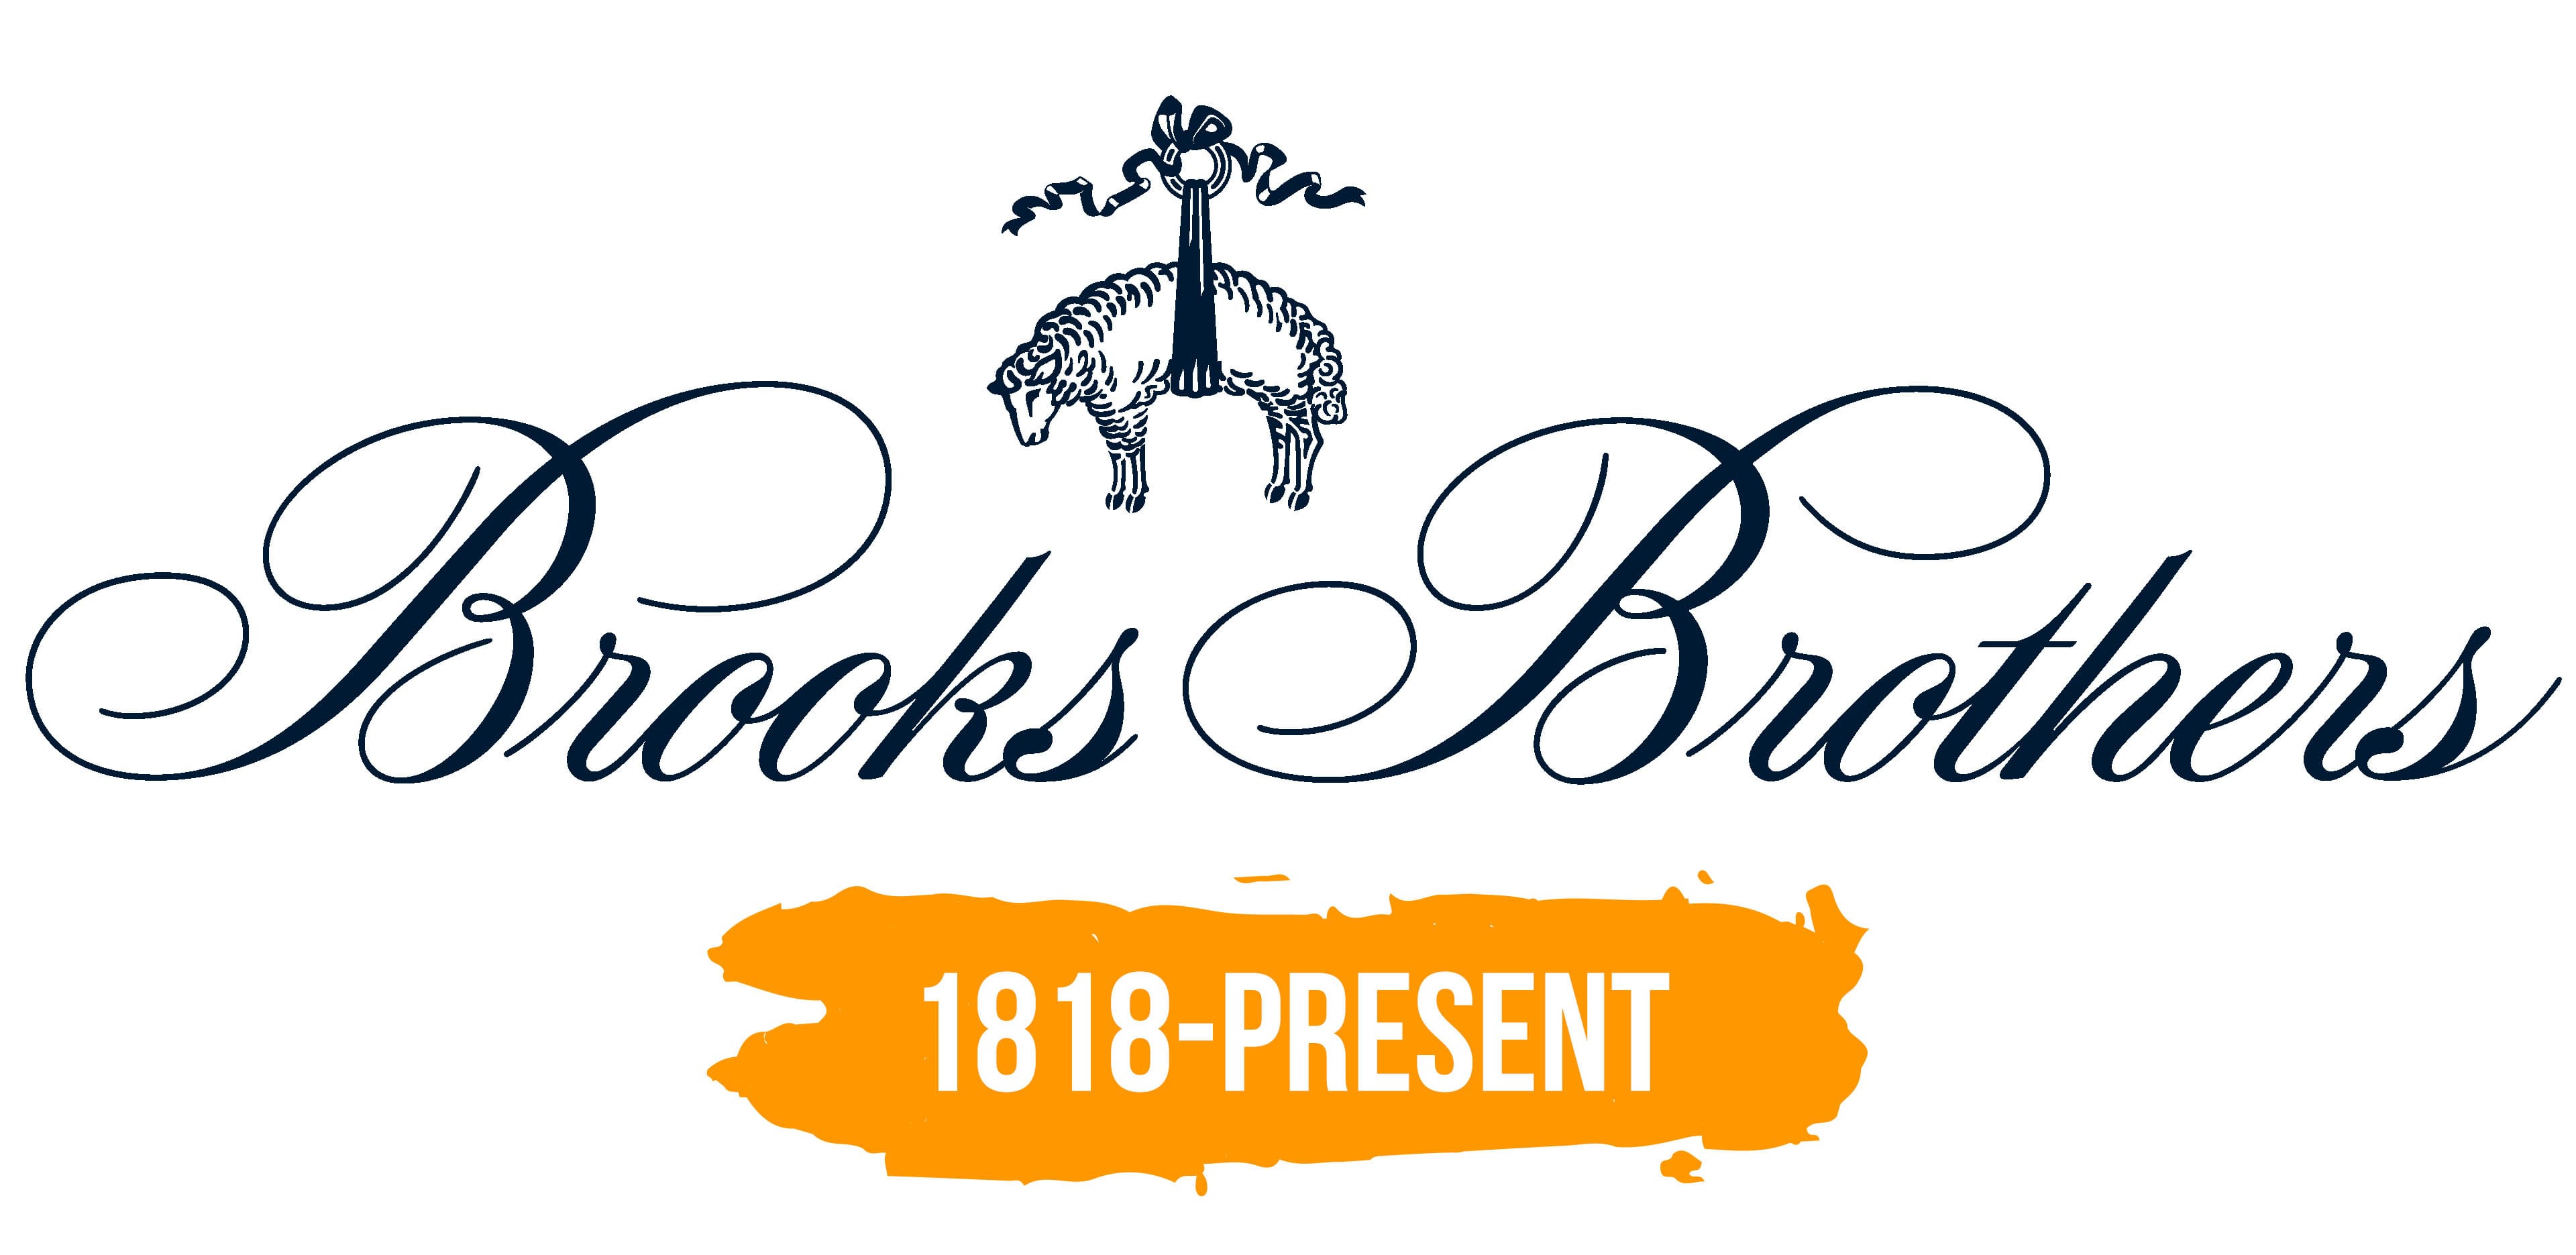 Brooks Brothers Logo : histoire, signification de l'emblème